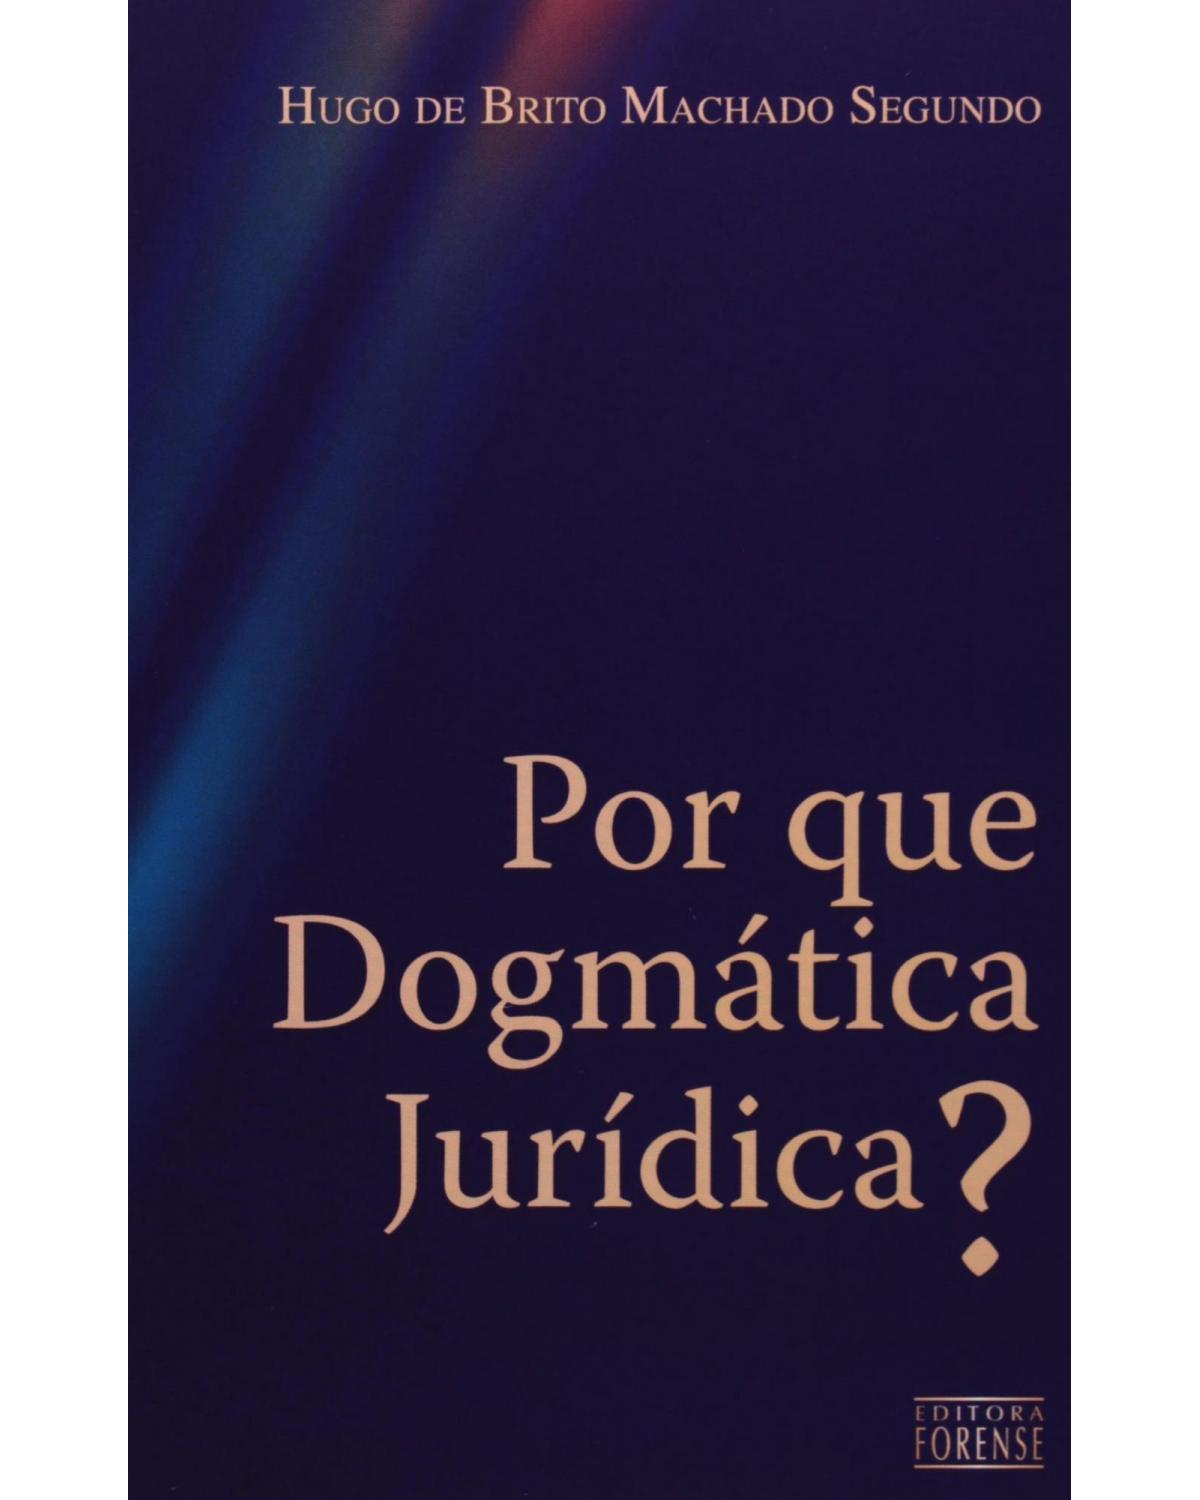 Por que dogmática jurídica? - 1ª Edição | 2008